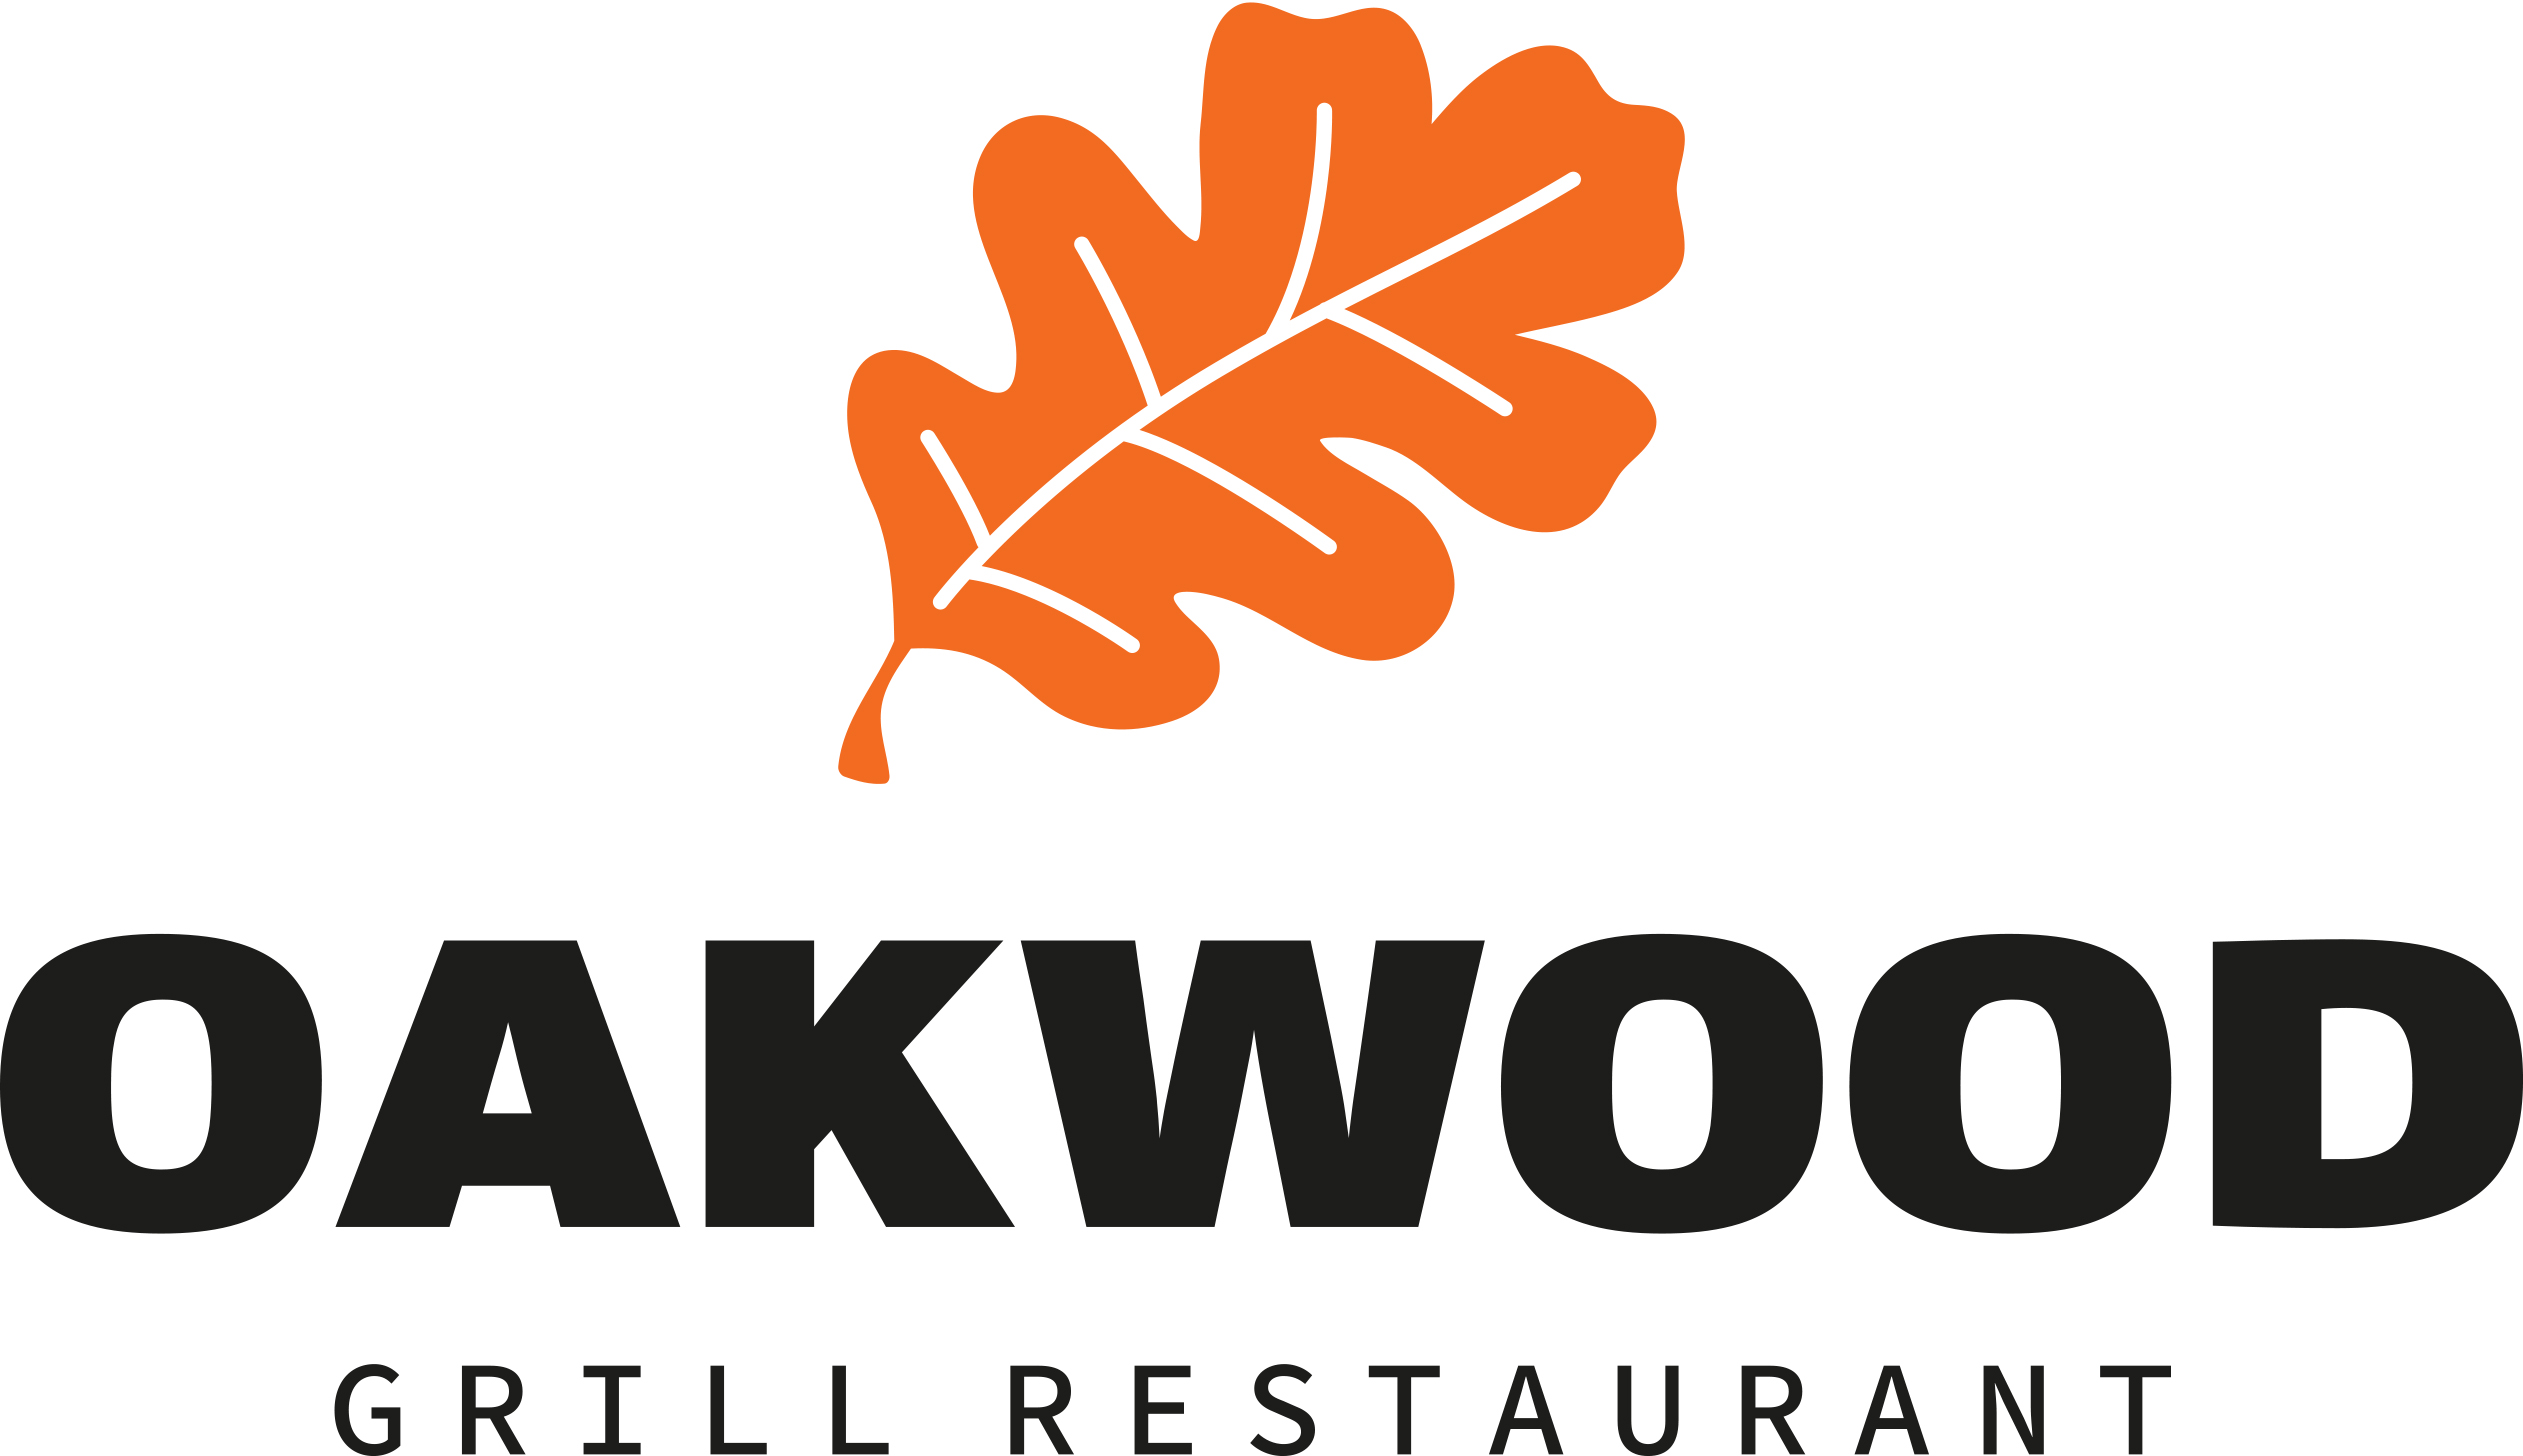 Oakwood Grill